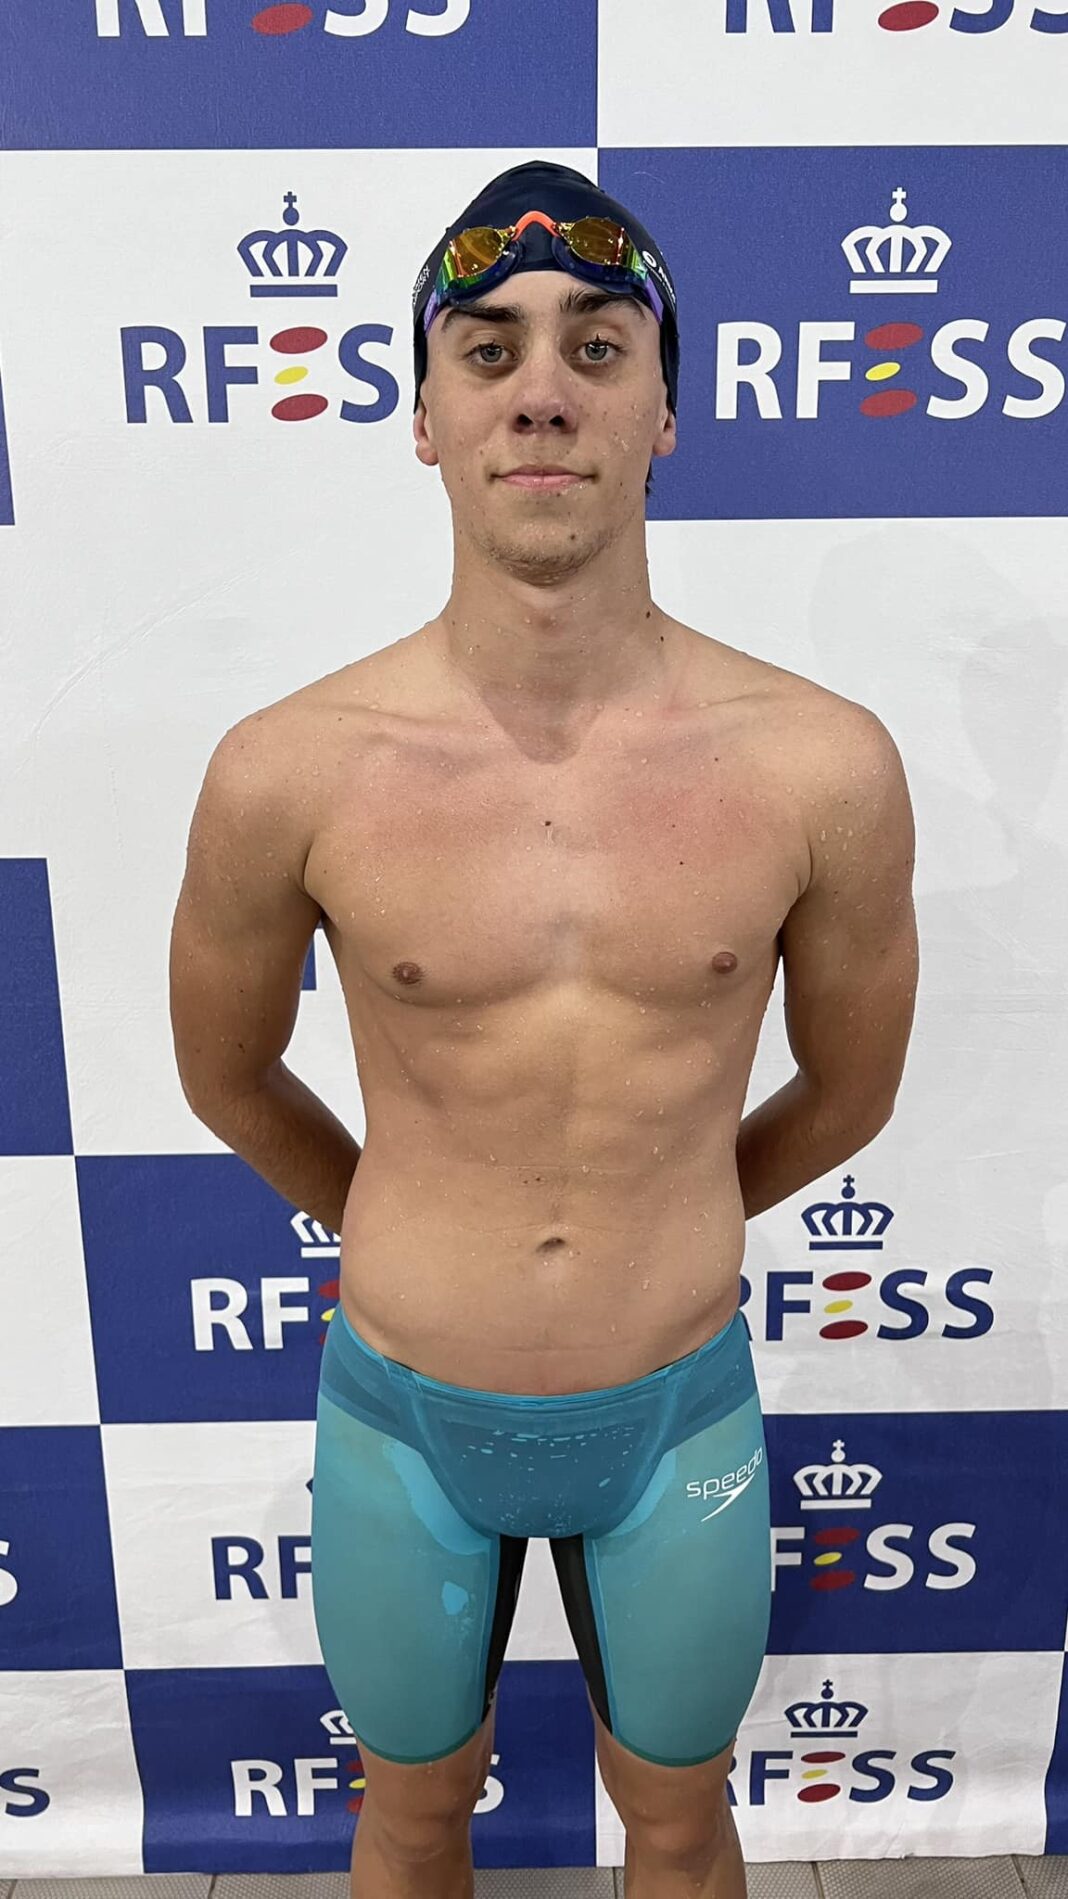 Mathis Raynaud (Club Leucante) – Récord de España 200 metros supersocorrista en categoría juvenil masculina (02:16:70 frente a 02:17:95).